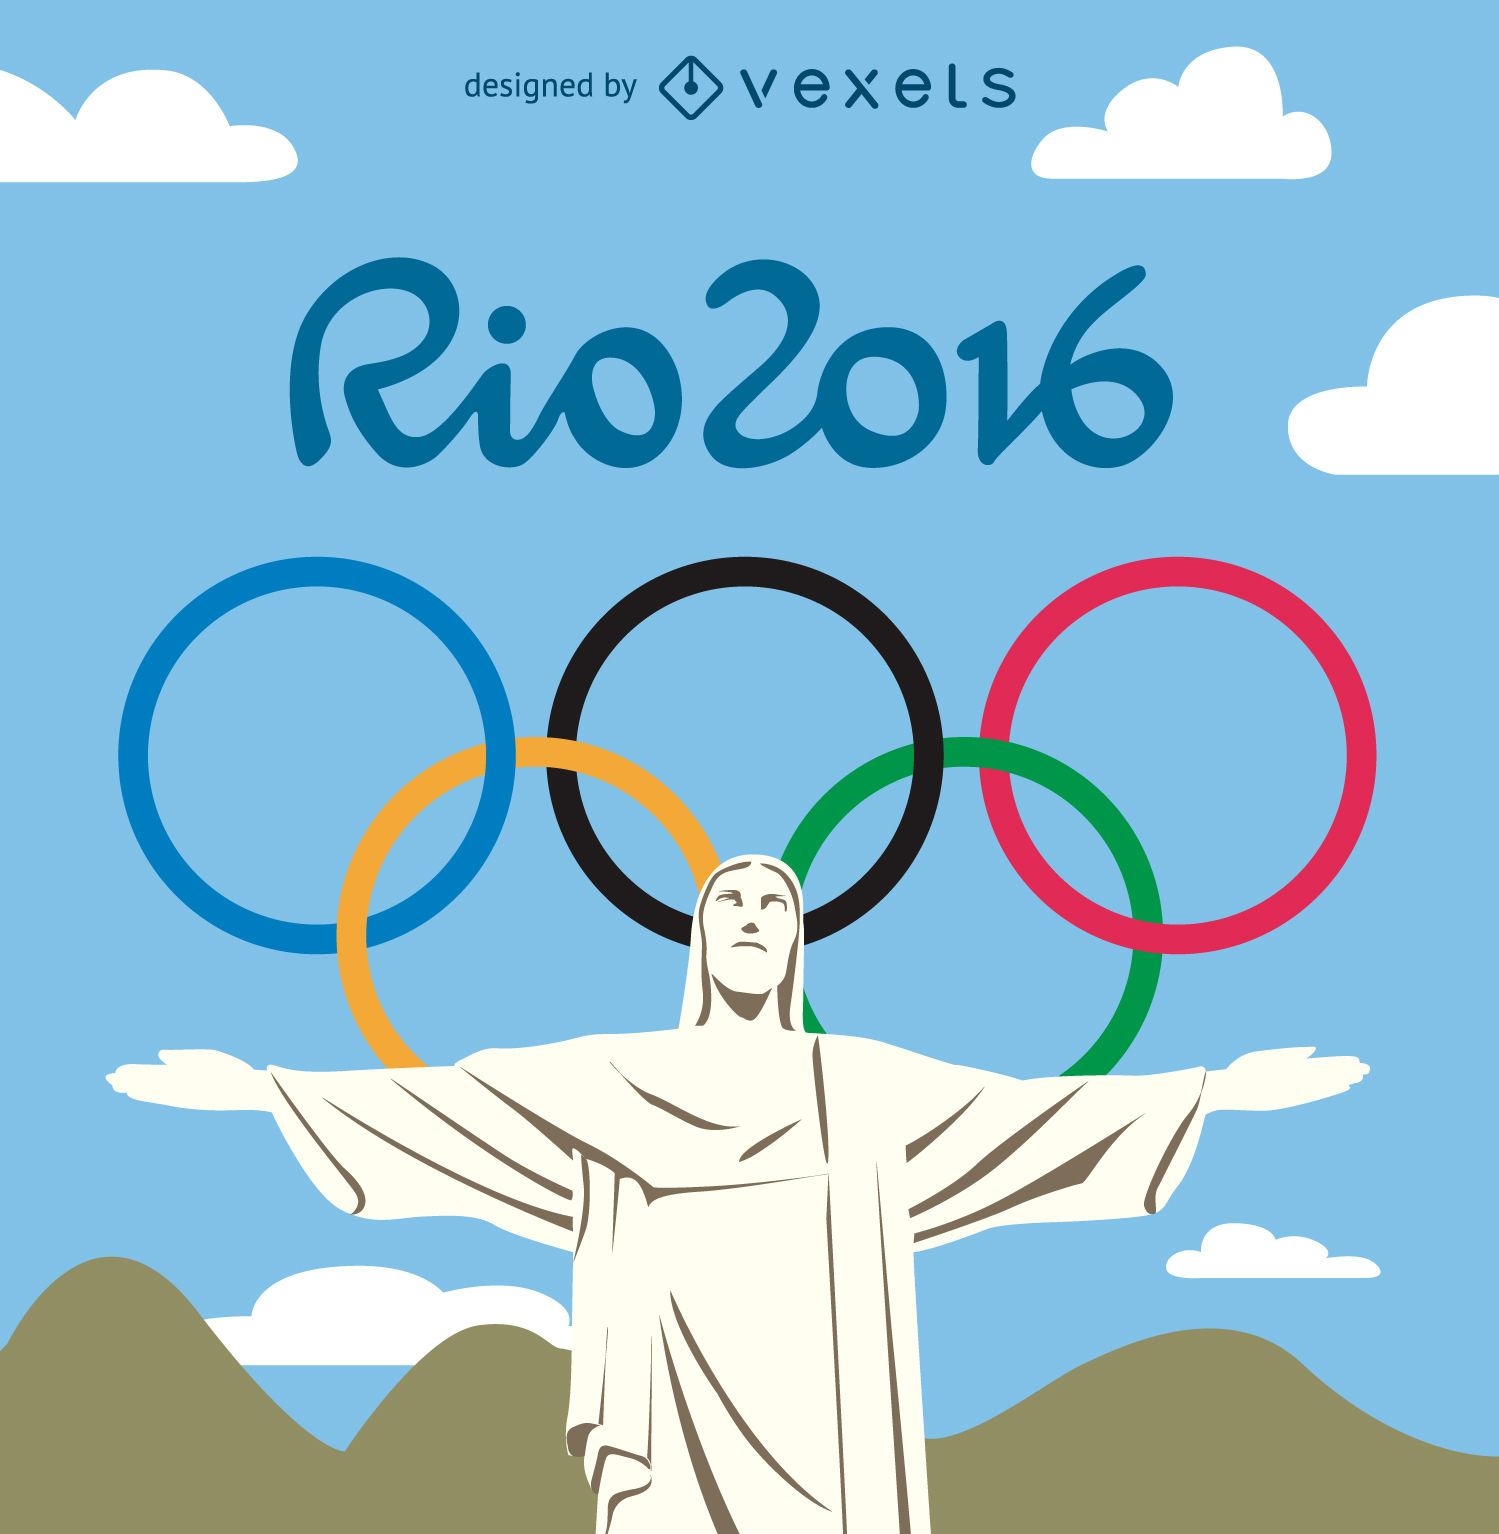 Jogos Ol?mpicos Rio 2016 - Cristo Redentor